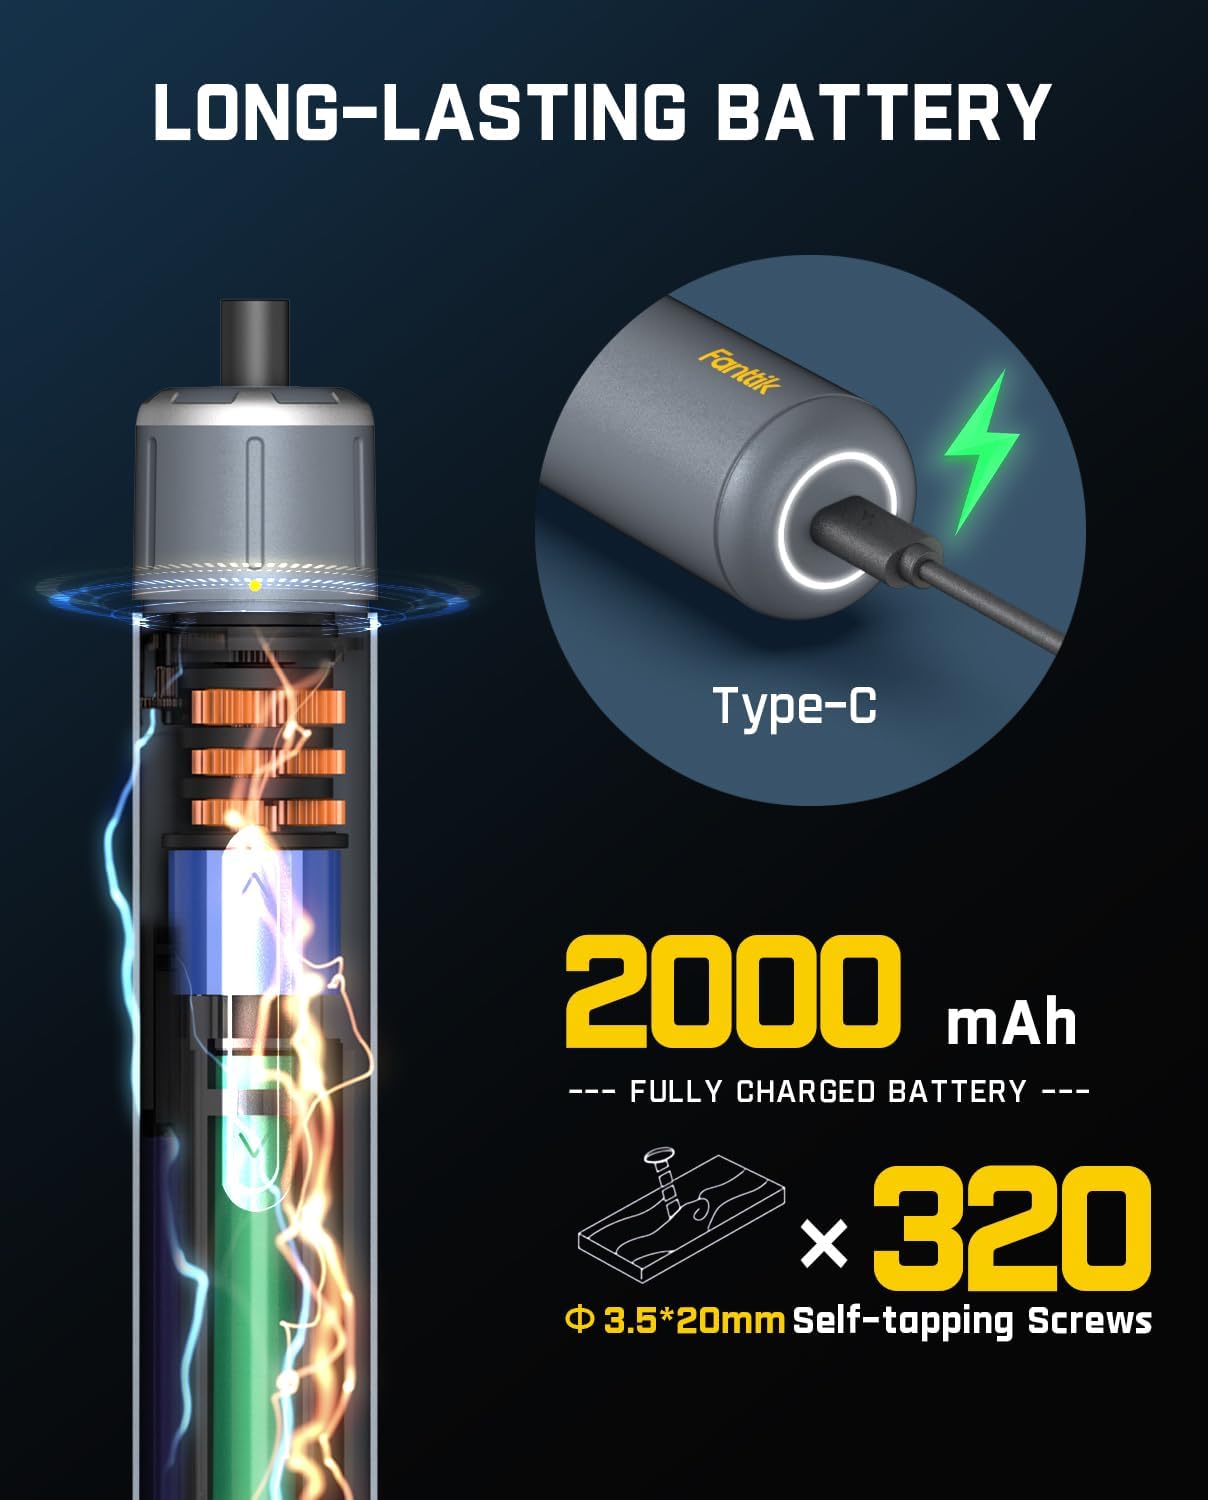 Fanttik S1 3.7V Pro Cordless Electic Screwdriver Torque Settings, Max 6 N.m, 2000mAh Battery, LED Light